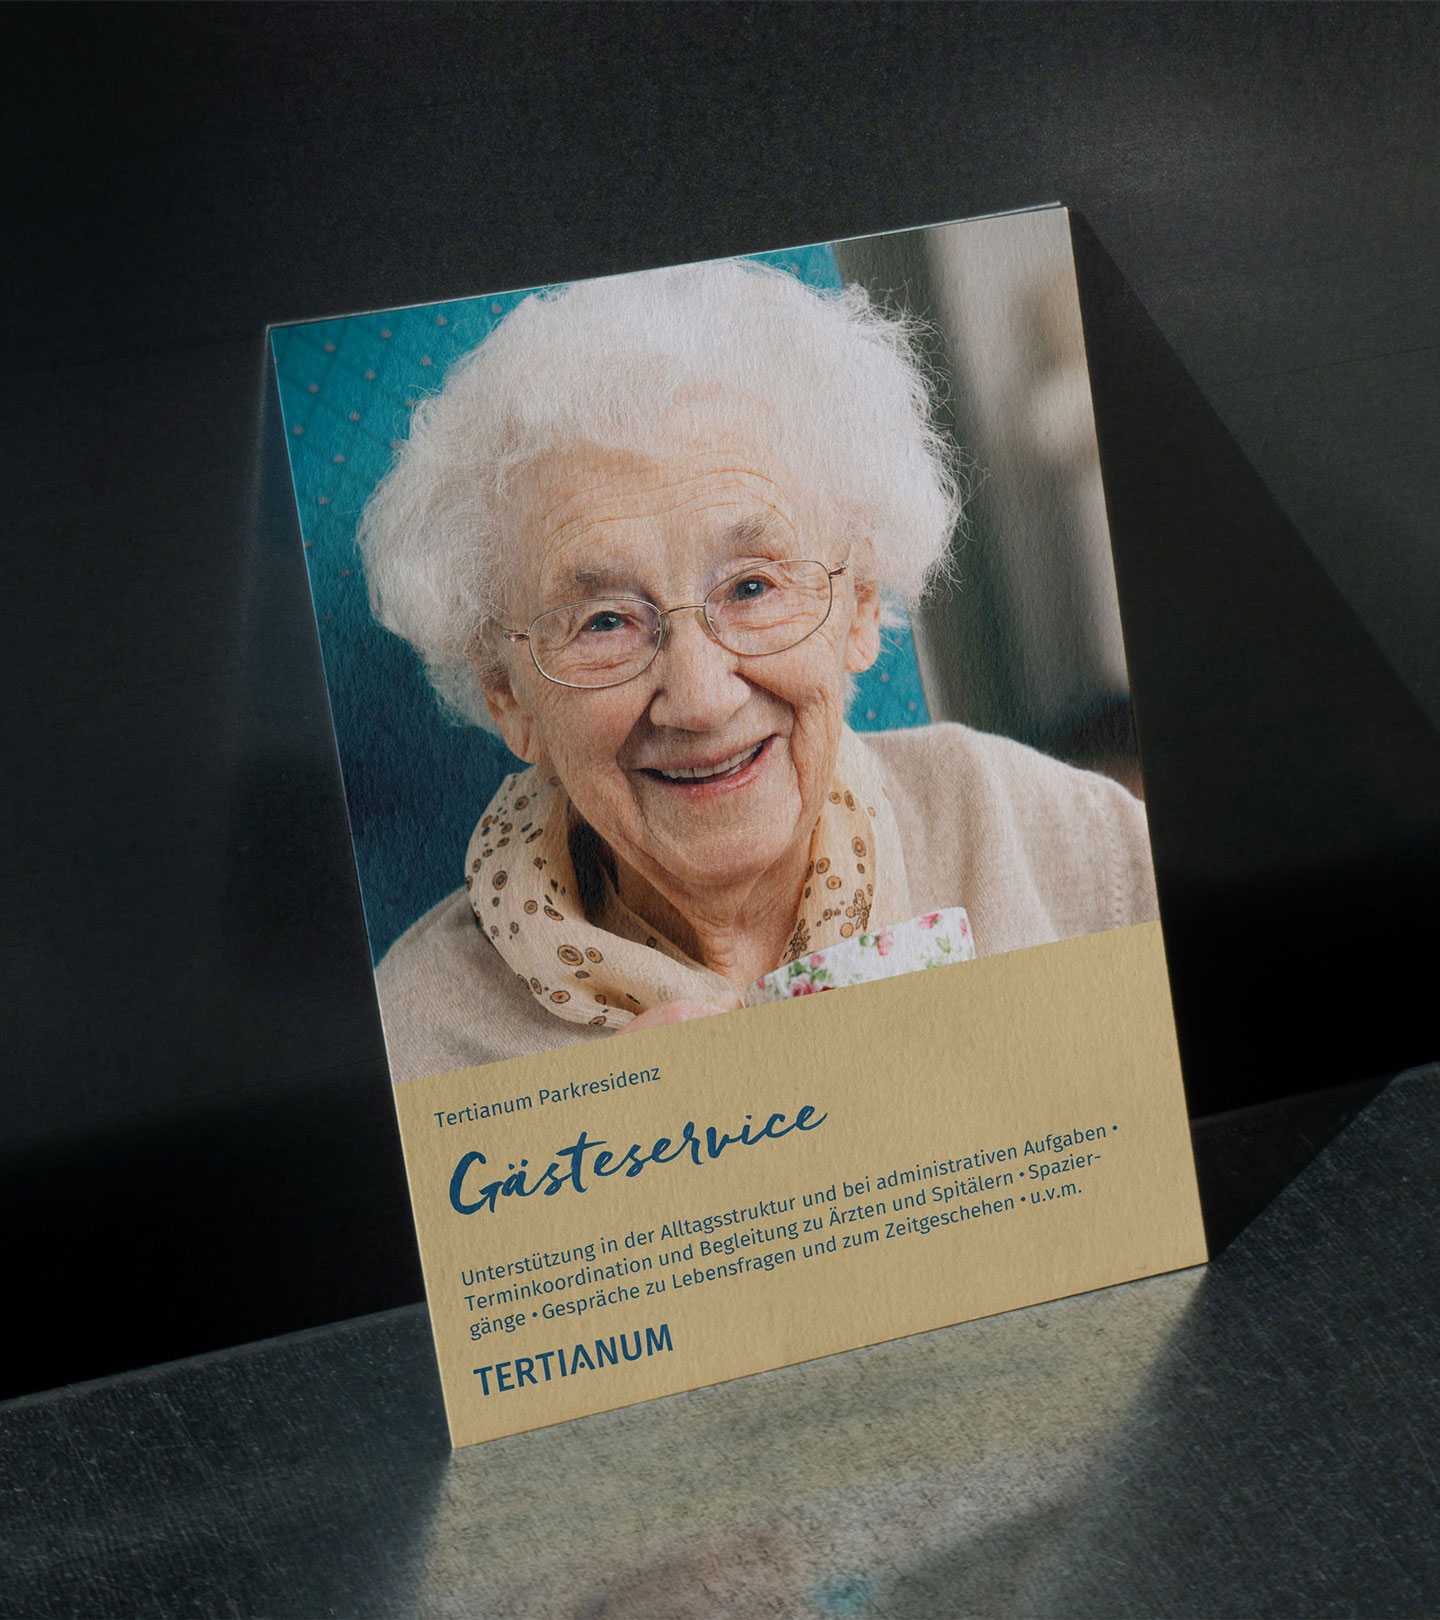 Der Informationsflyer zum Gästeservice der Tertianum Parkresidenz zeigt eine strahlende alte Frau.